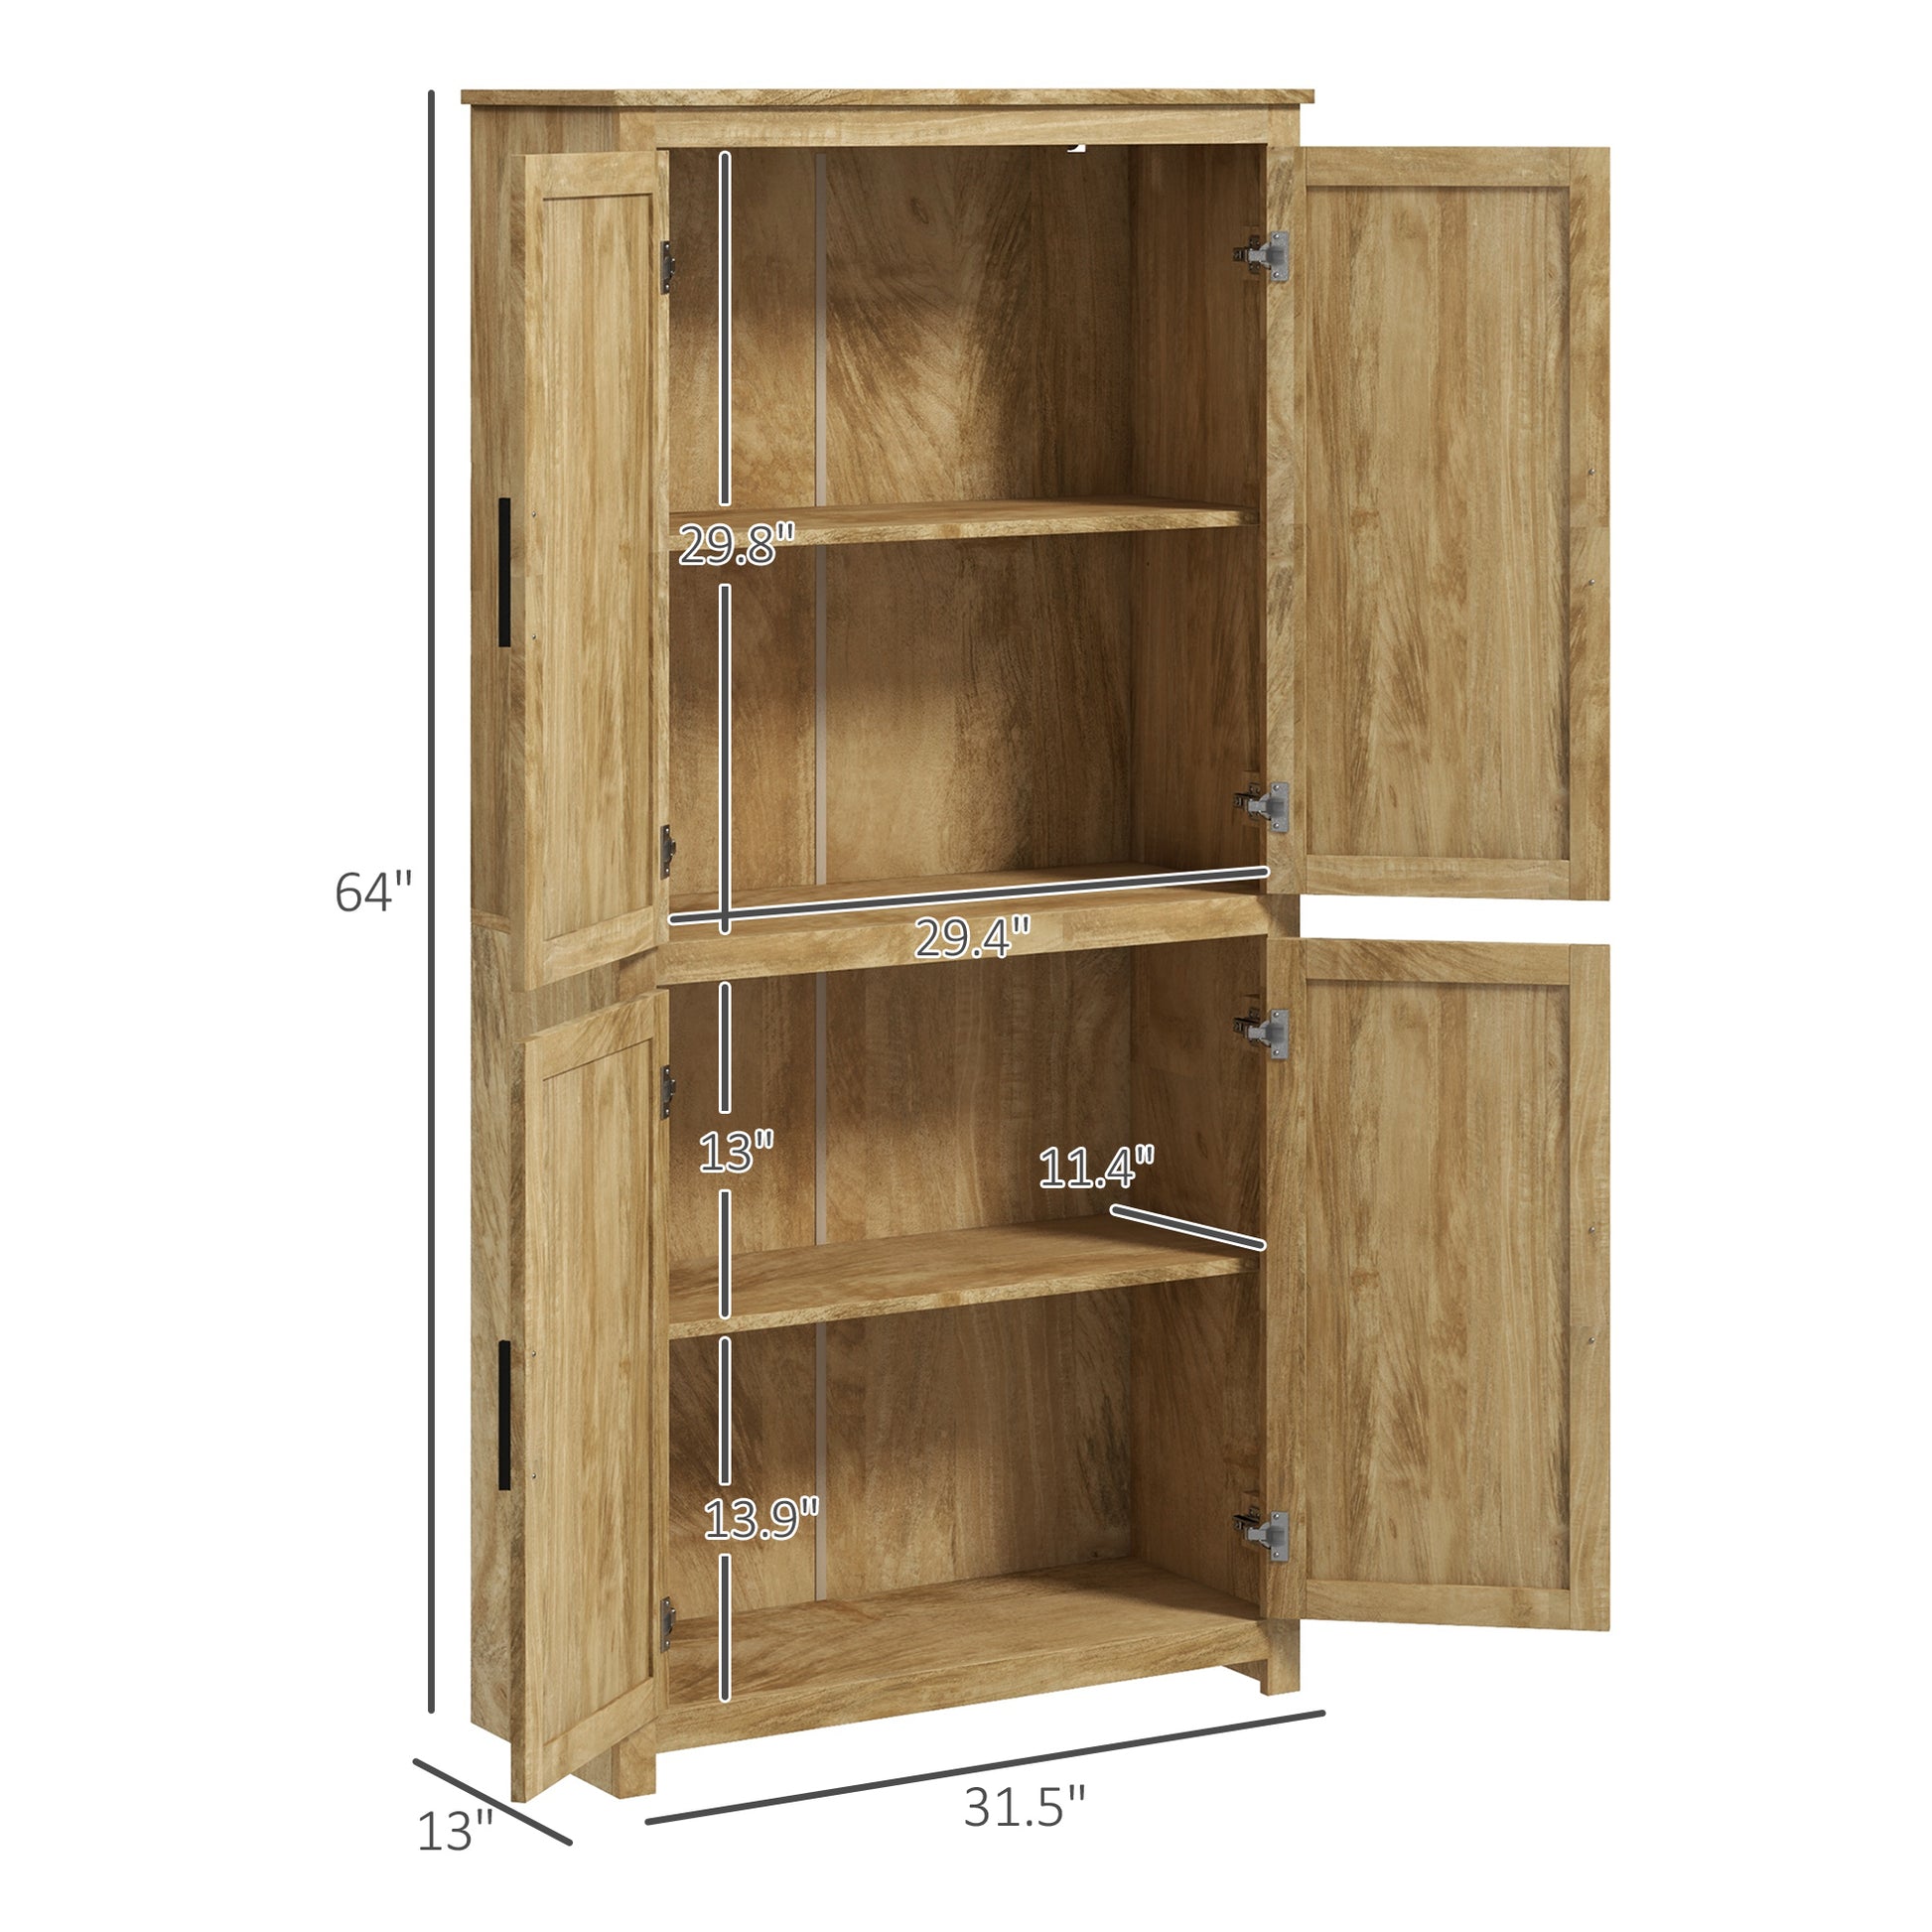 Homcom 64" Rattan Kitchen Storage Cabinet With -